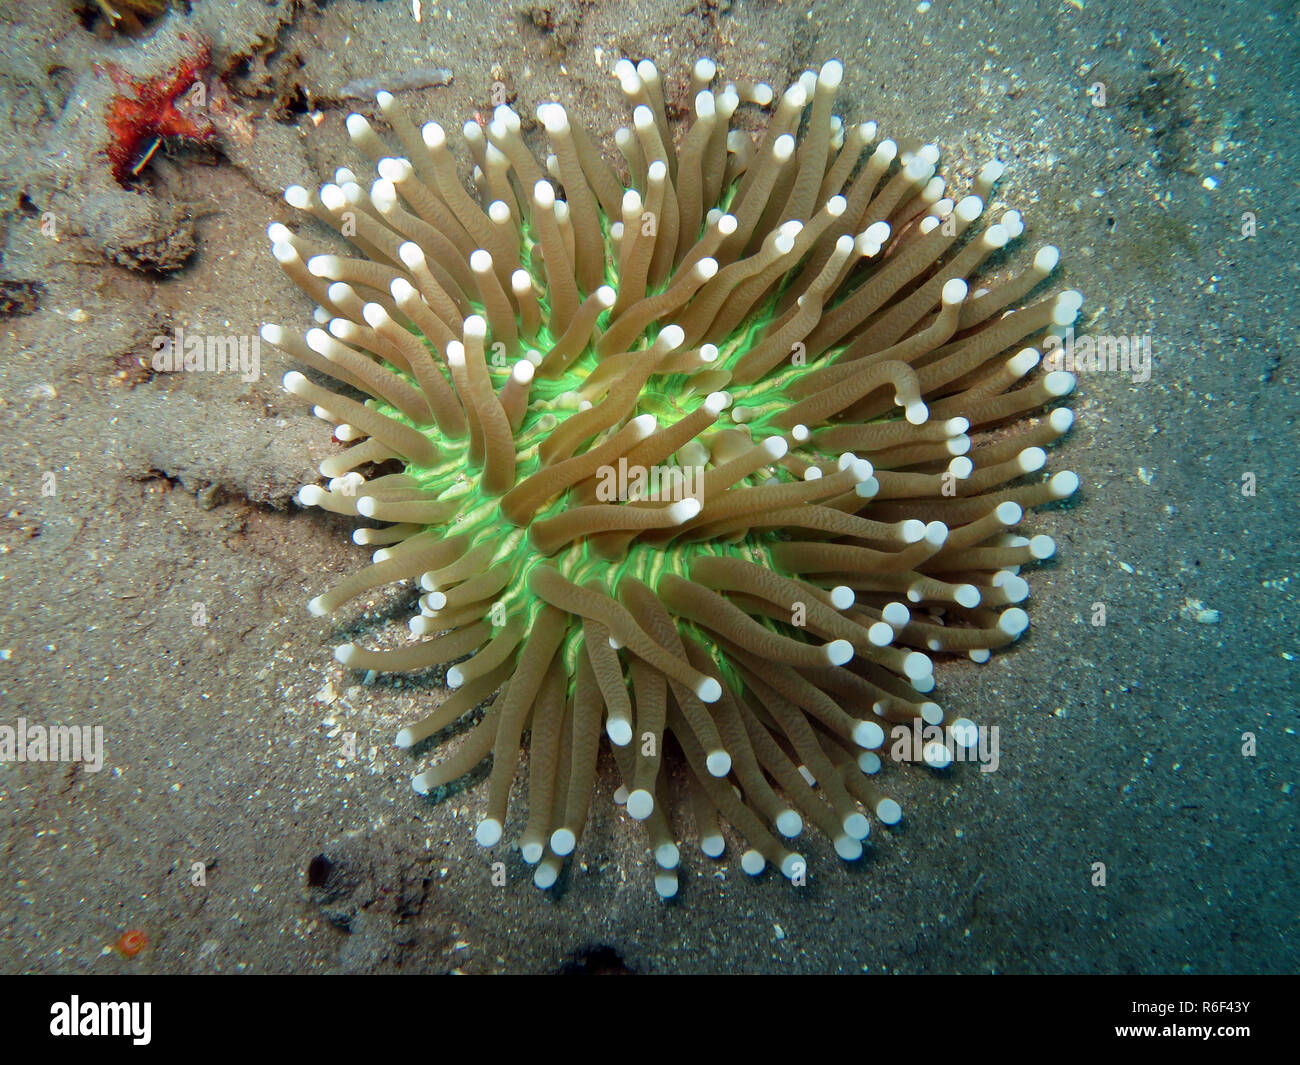 anemone mushroom coral (heliofungia actiniformis,synonym fungia actiniformis) Stock Photo